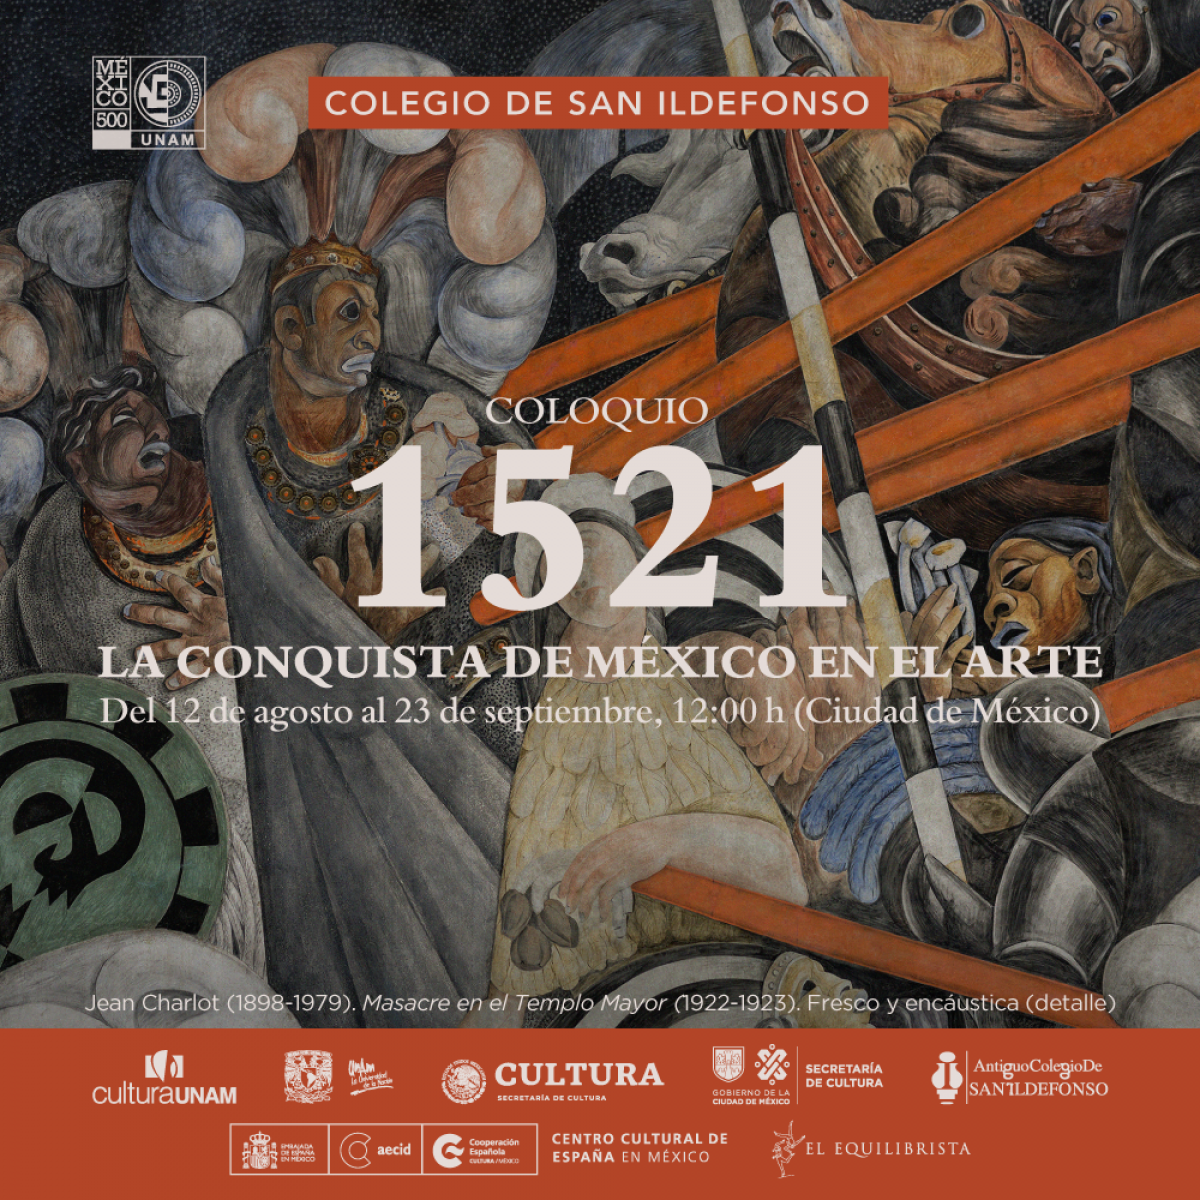 Coloquio. 1521 La conquista de México en el Arte